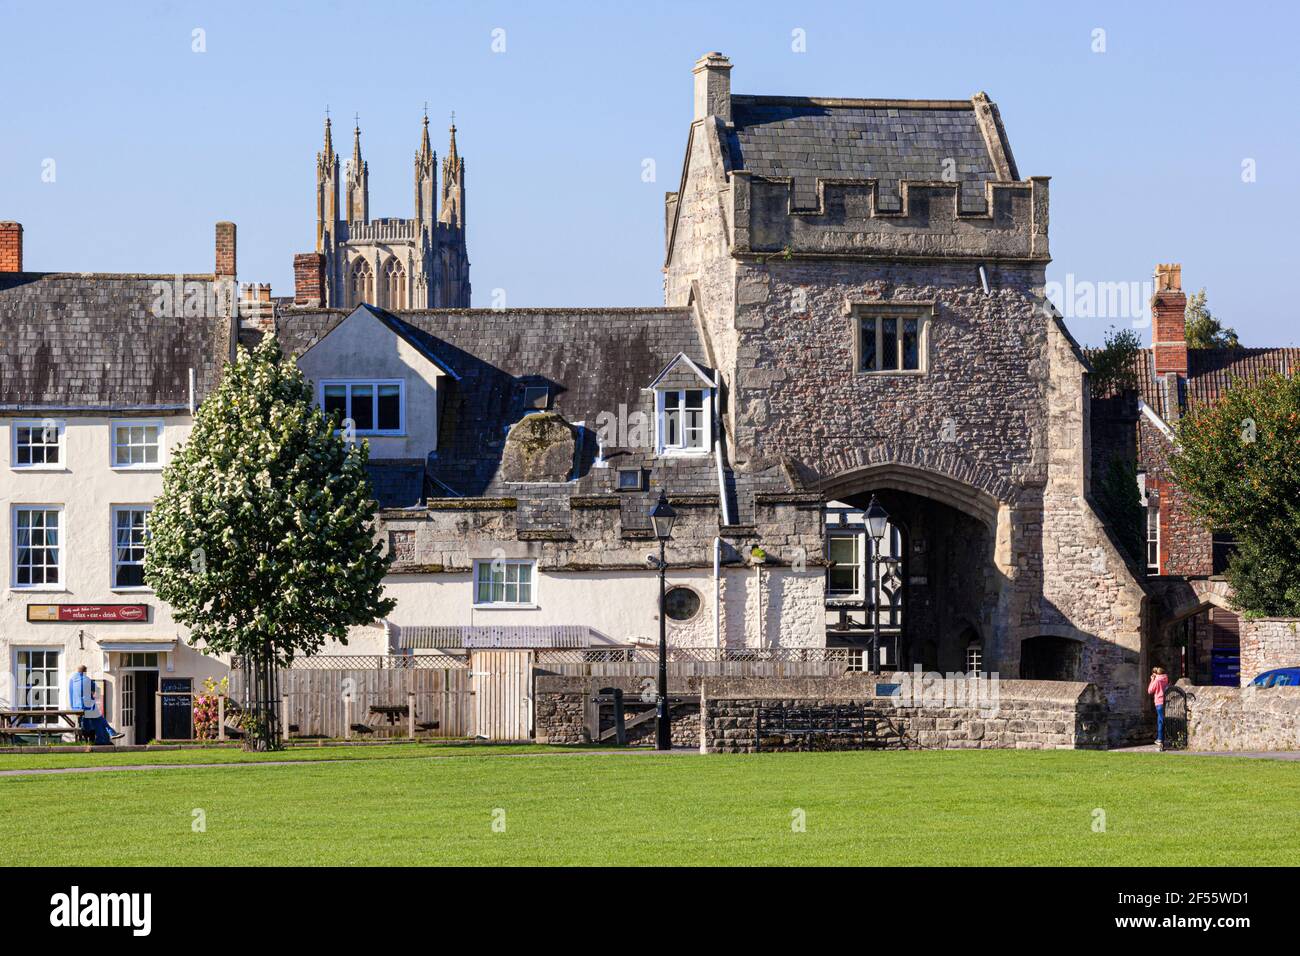 L'ancien gatehouse à l'extrémité de la cathédrale verte dans la ville de Wells, Somerset Royaume-Uni Banque D'Images